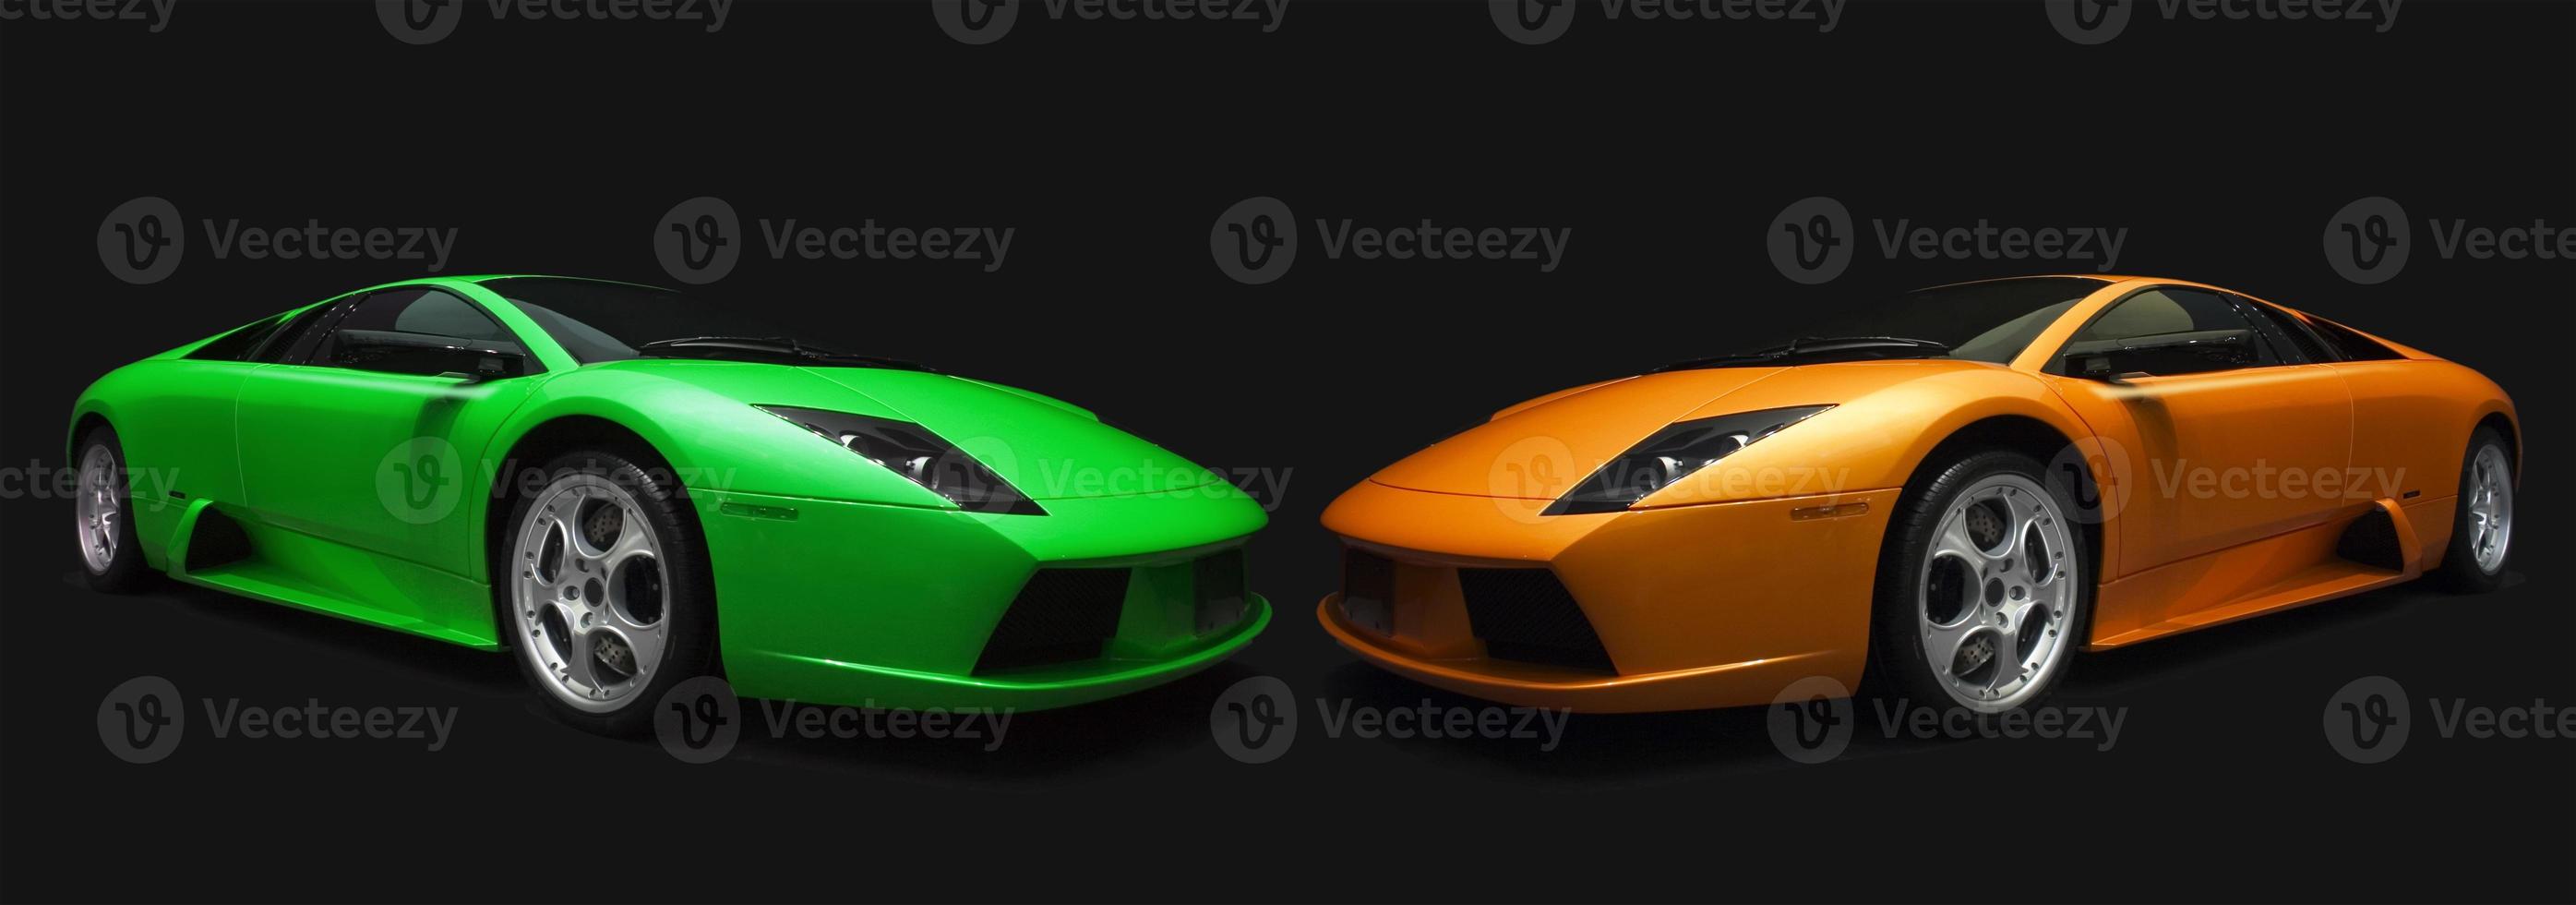 voitures de sport italiennes vertes et oranges. sur fond noir photo